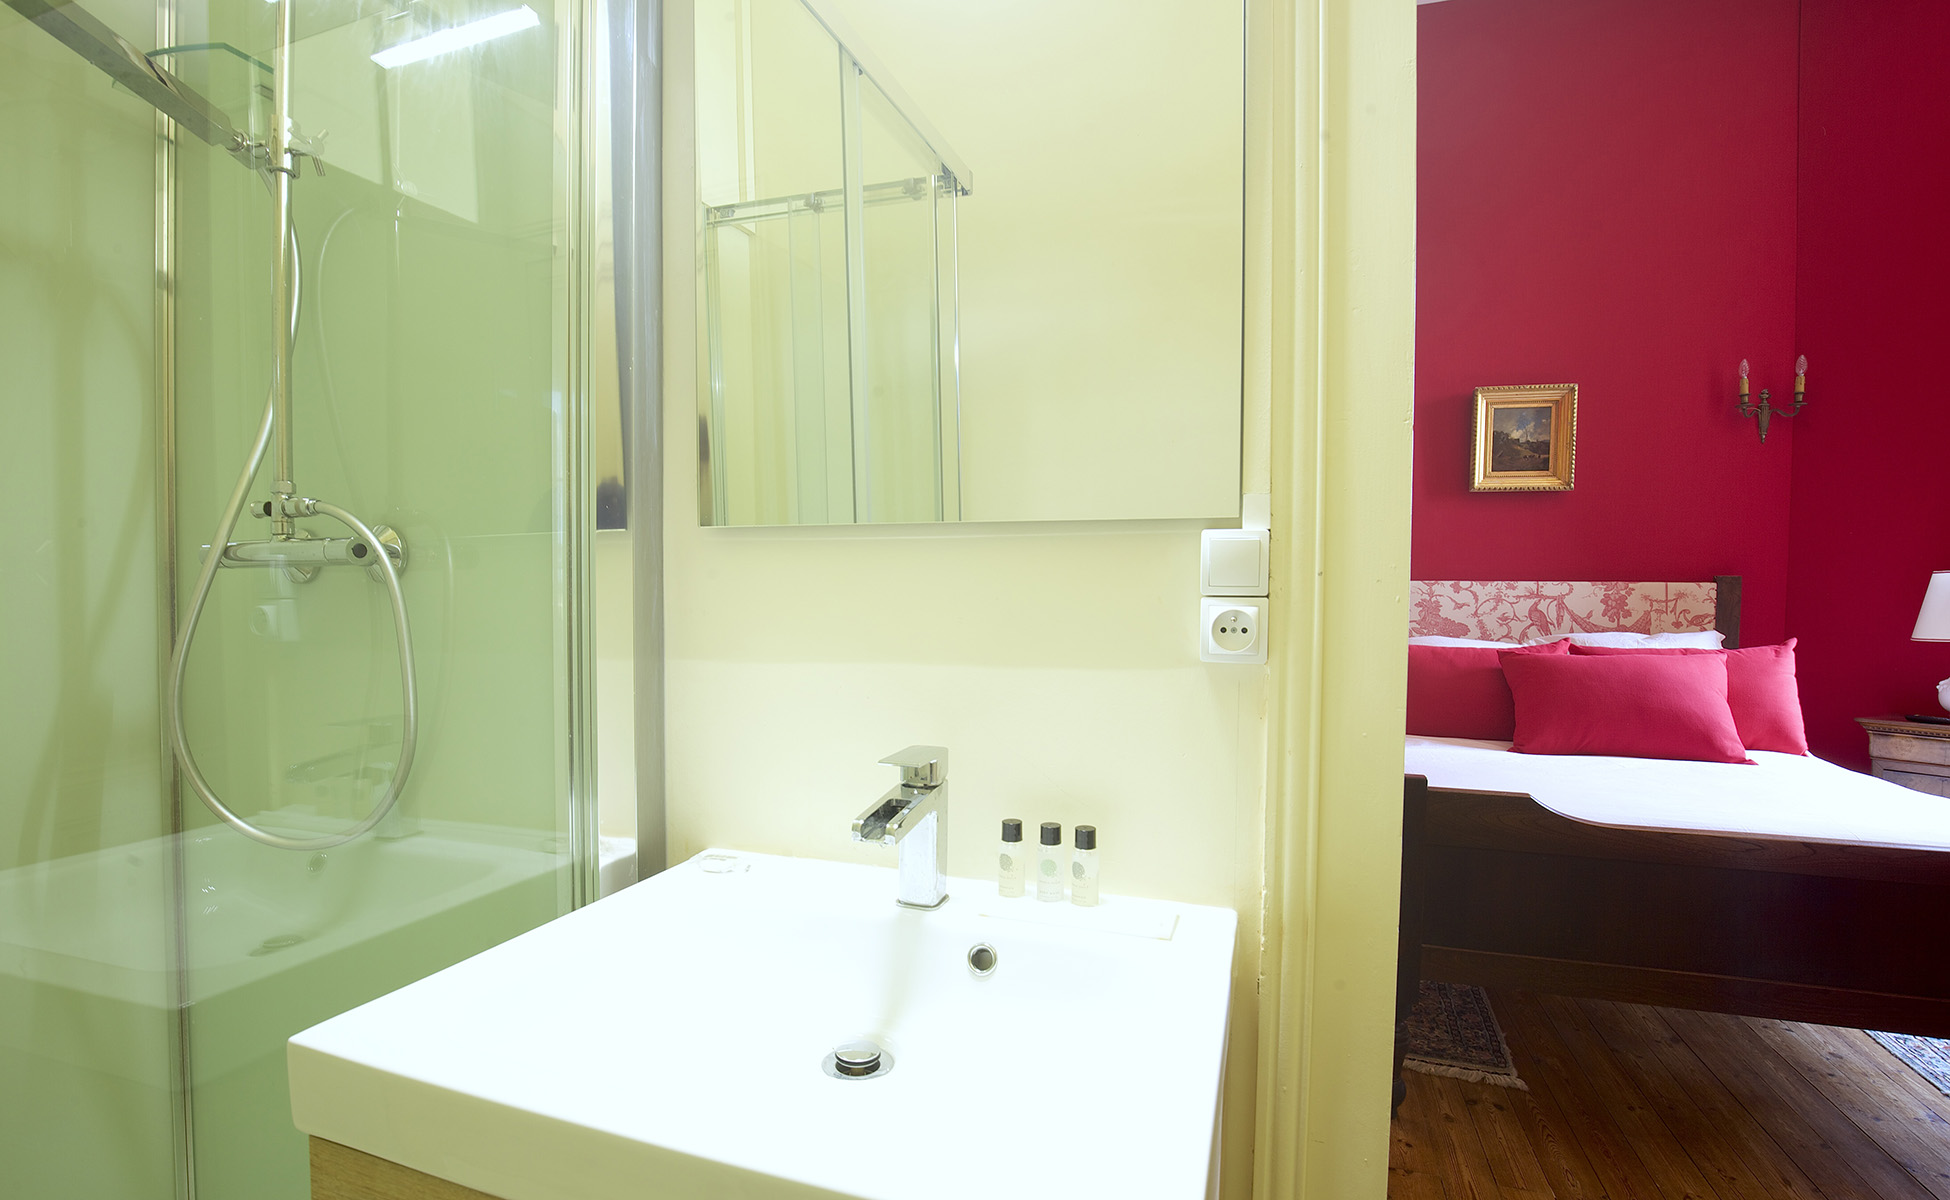 Lovelydays luxury service apartment rental - Libourne - Chateau de JUNAYME - Lovelysuite - 7 bedrooms - 6 bathrooms - Lovely shower - e42b490bba81 - Lovelydays